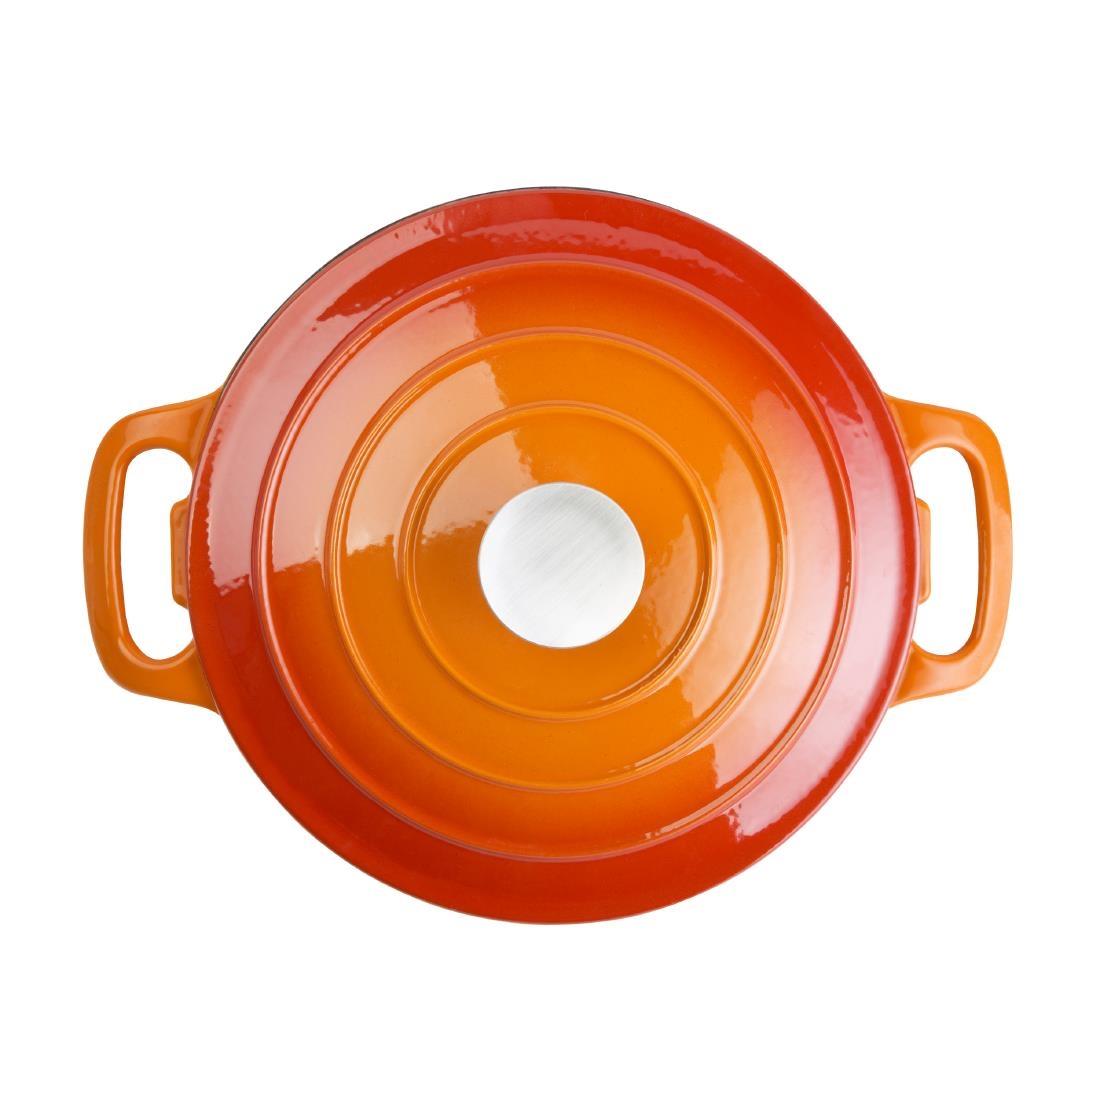 Vogue Orange Round Casserole Dish 4Ltr - GH303  - 3